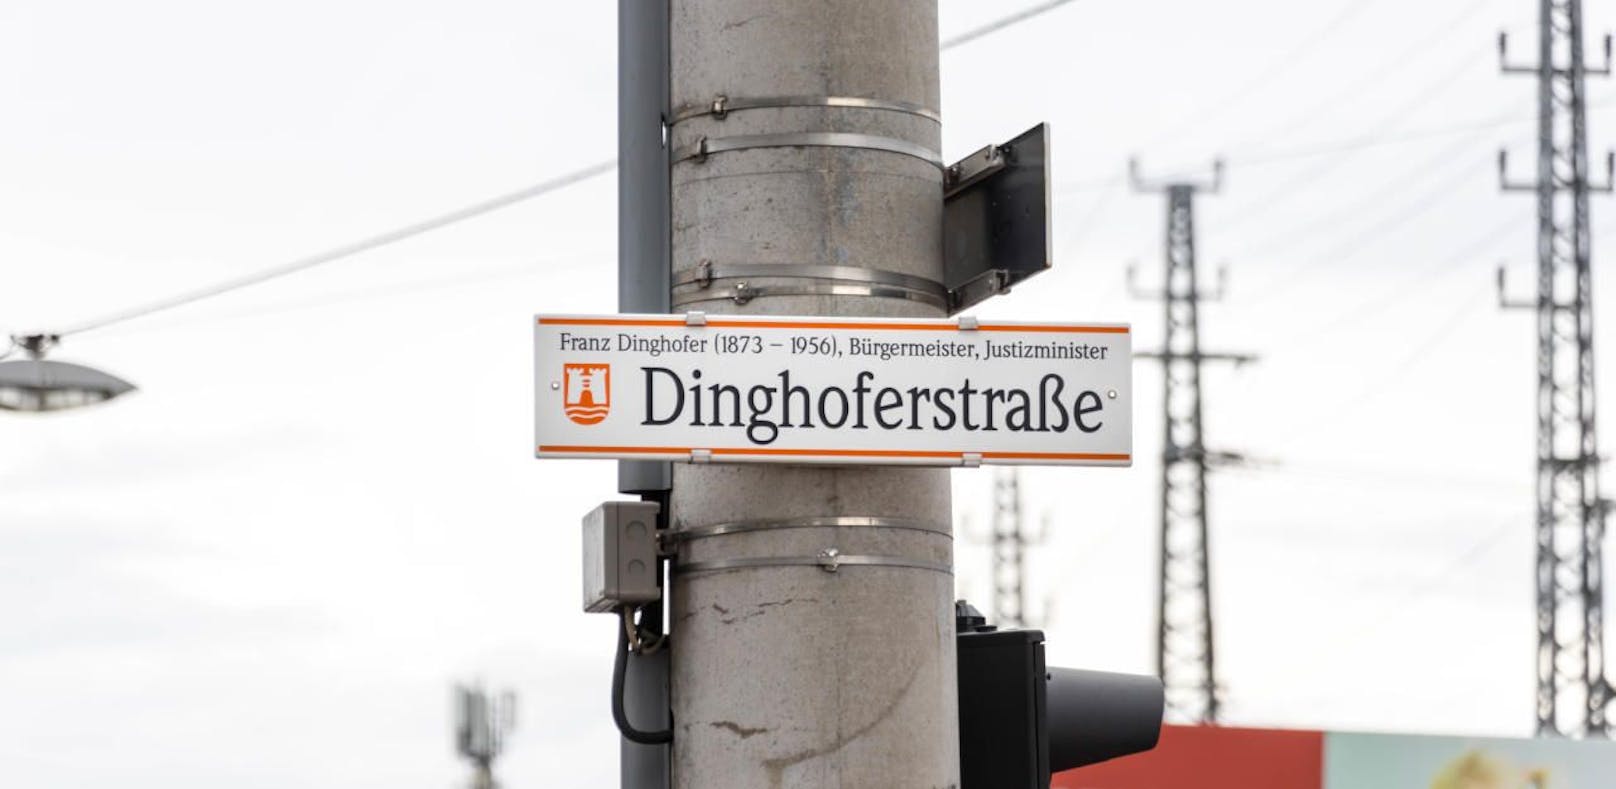 Die Diskussion um die Dinghoferstraße führte nun dazu, dass alle Straßennamen in Linz überprüft werden.